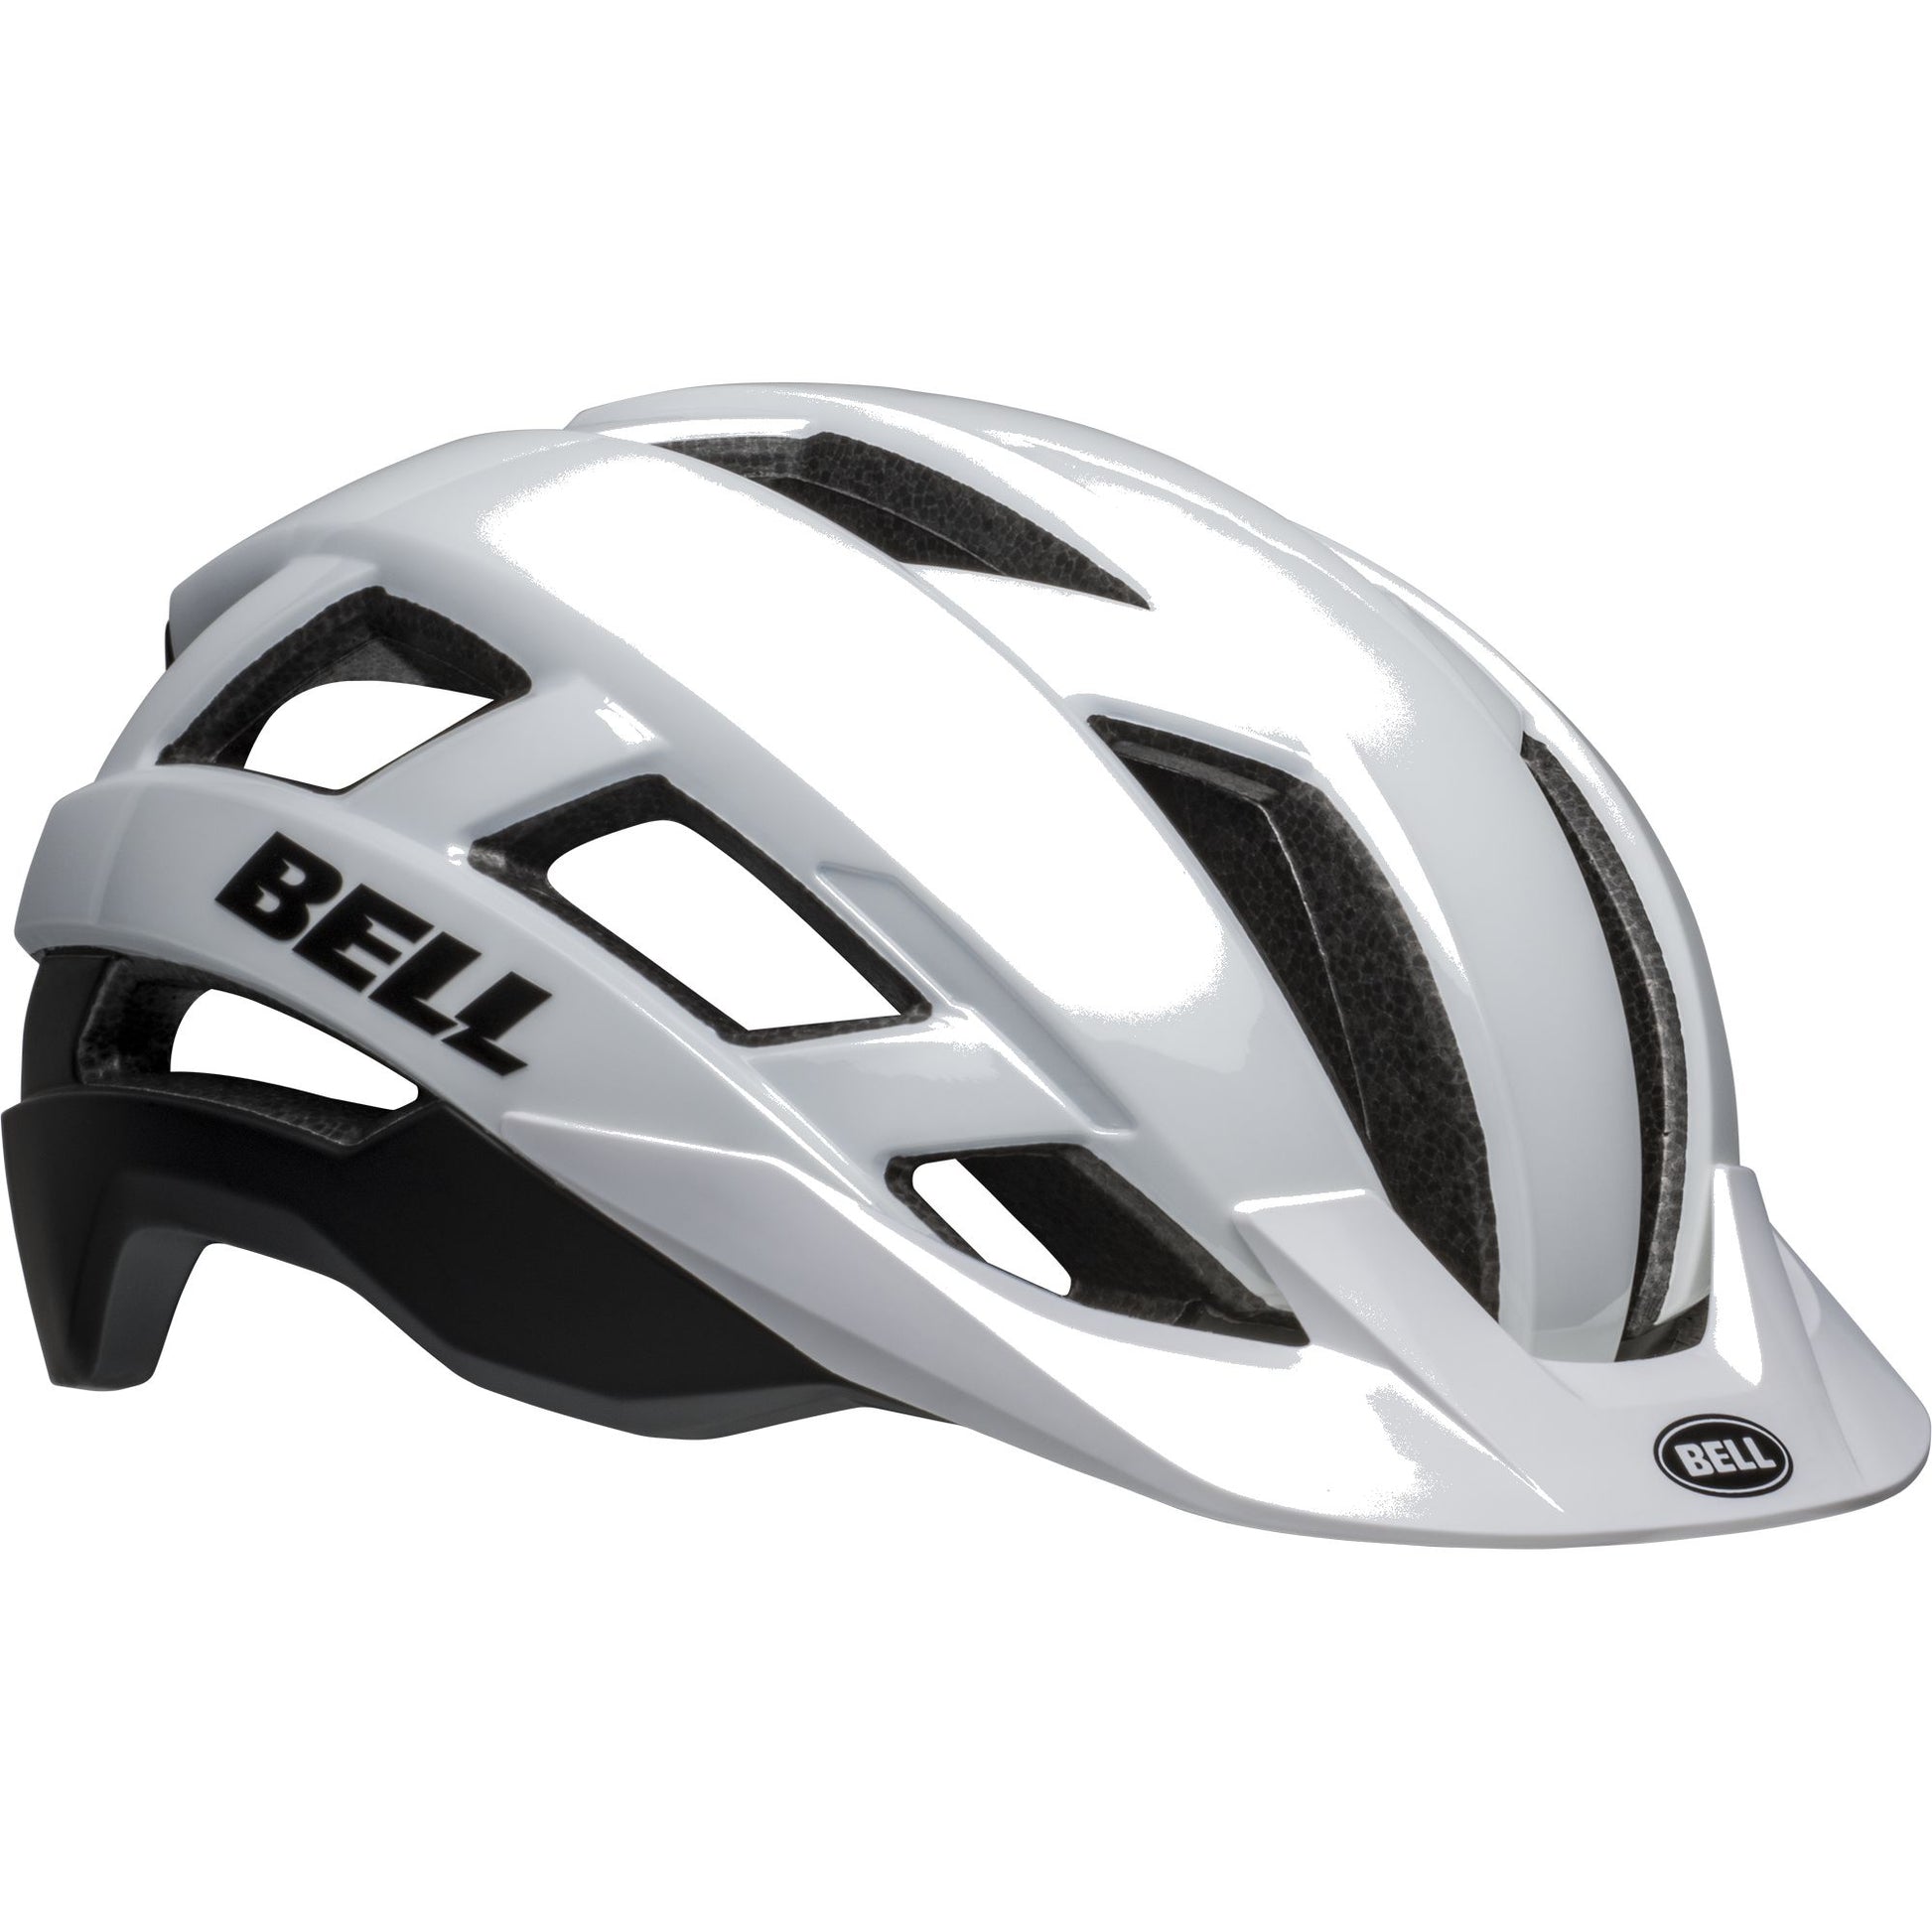 Bell Falcon XRV LED MIPS Helmet Matte Gloss White Black - Bell Bike Helmets